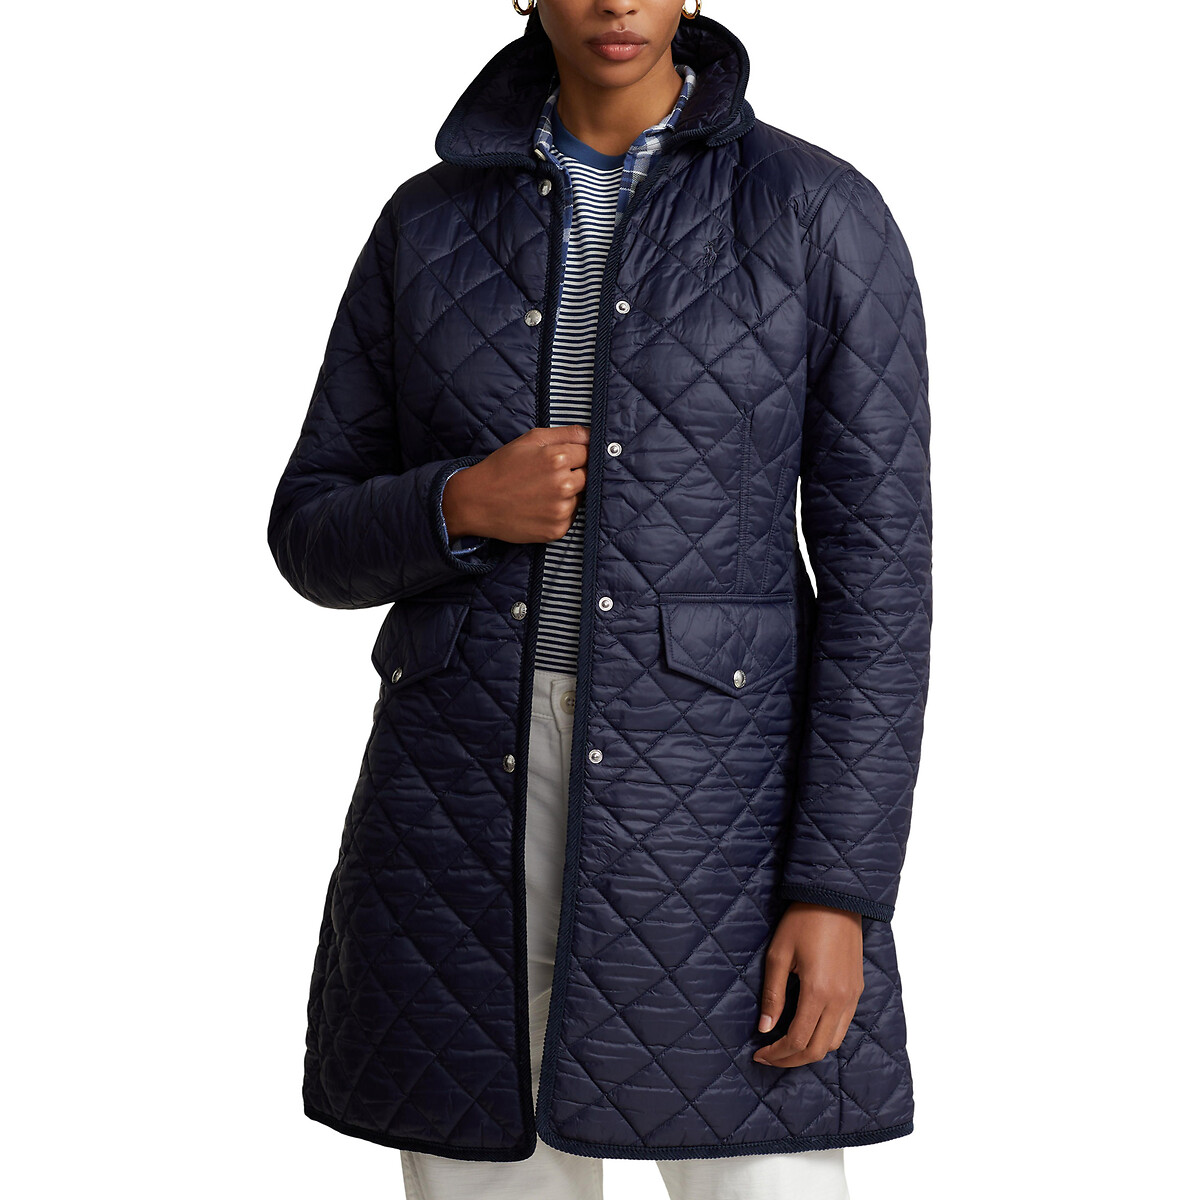 Куртка стеганая средней длины на кнопках S синий 2021 куртка женская зимняя стеганая куртка средней длины новый стиль корейский стиль свободная толстая теплая стеганая куртка куртки